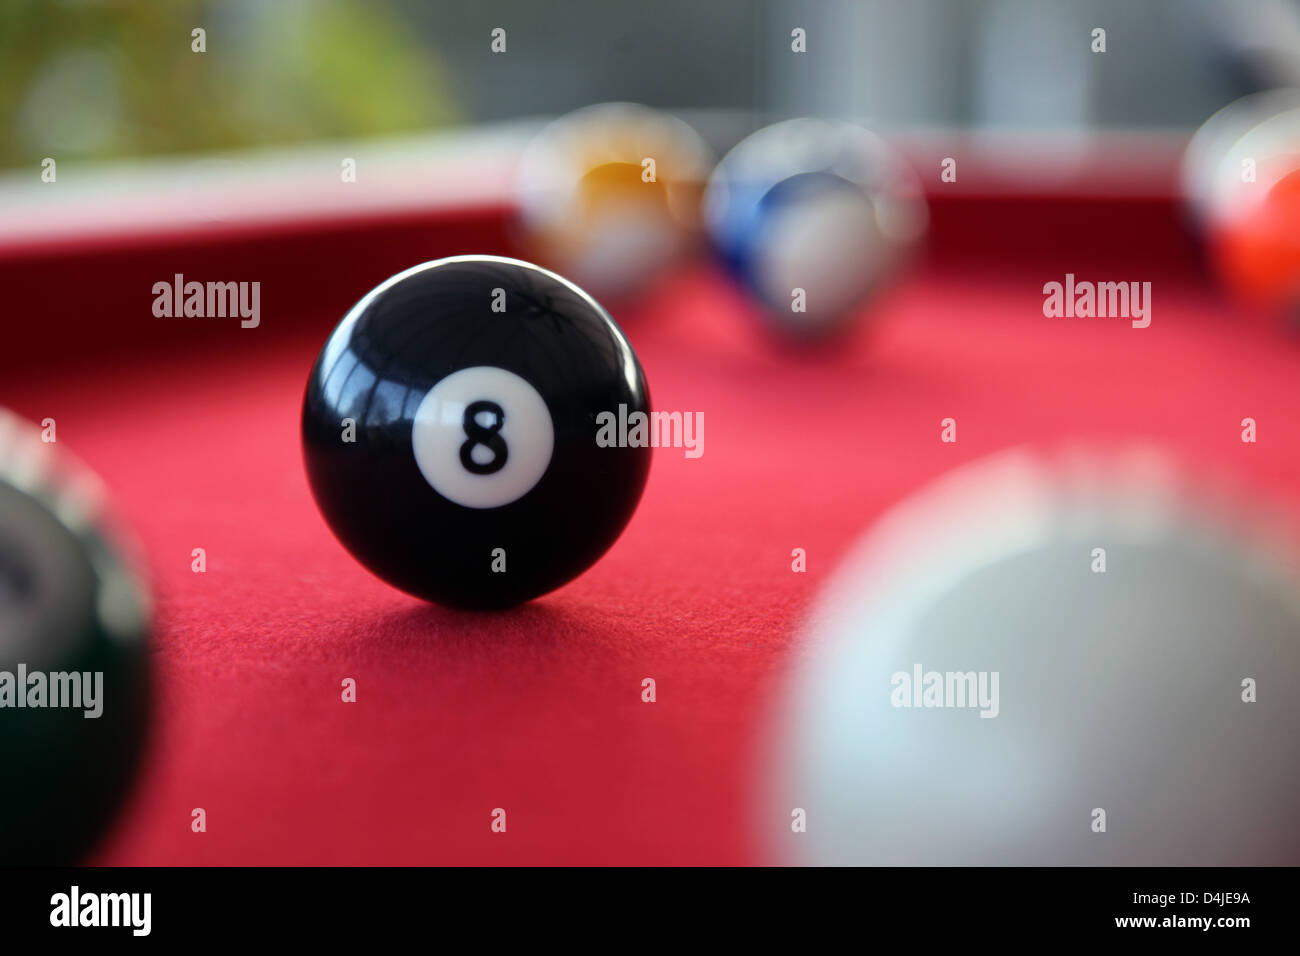 Es ist ein Foto von einem Snooker oder Billard mit rotem Teppich. Wir sehen die Kugeln 9, 11, 8 und weißen. Es ist ein indoor-Spiel Stockfoto